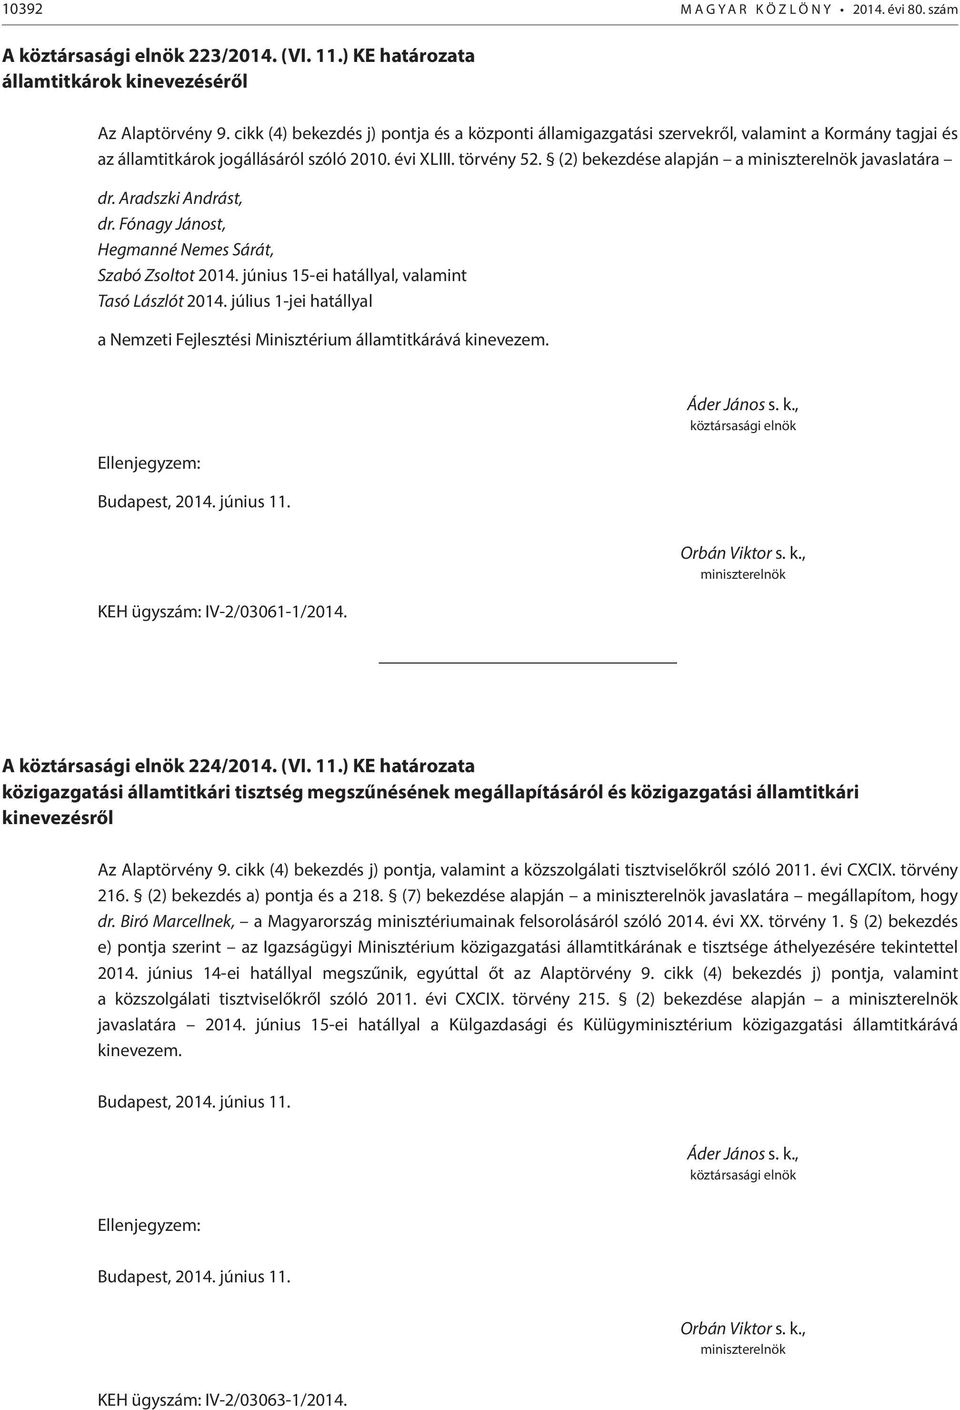 (2) bekezdése alapján a javaslatára dr. Aradszki Andrást, dr. Fónagy Jánost, Hegmanné Nemes Sárát, Szabó Zsoltot 2014. június 15-ei hatállyal, valamint Tasó Lászlót 2014.